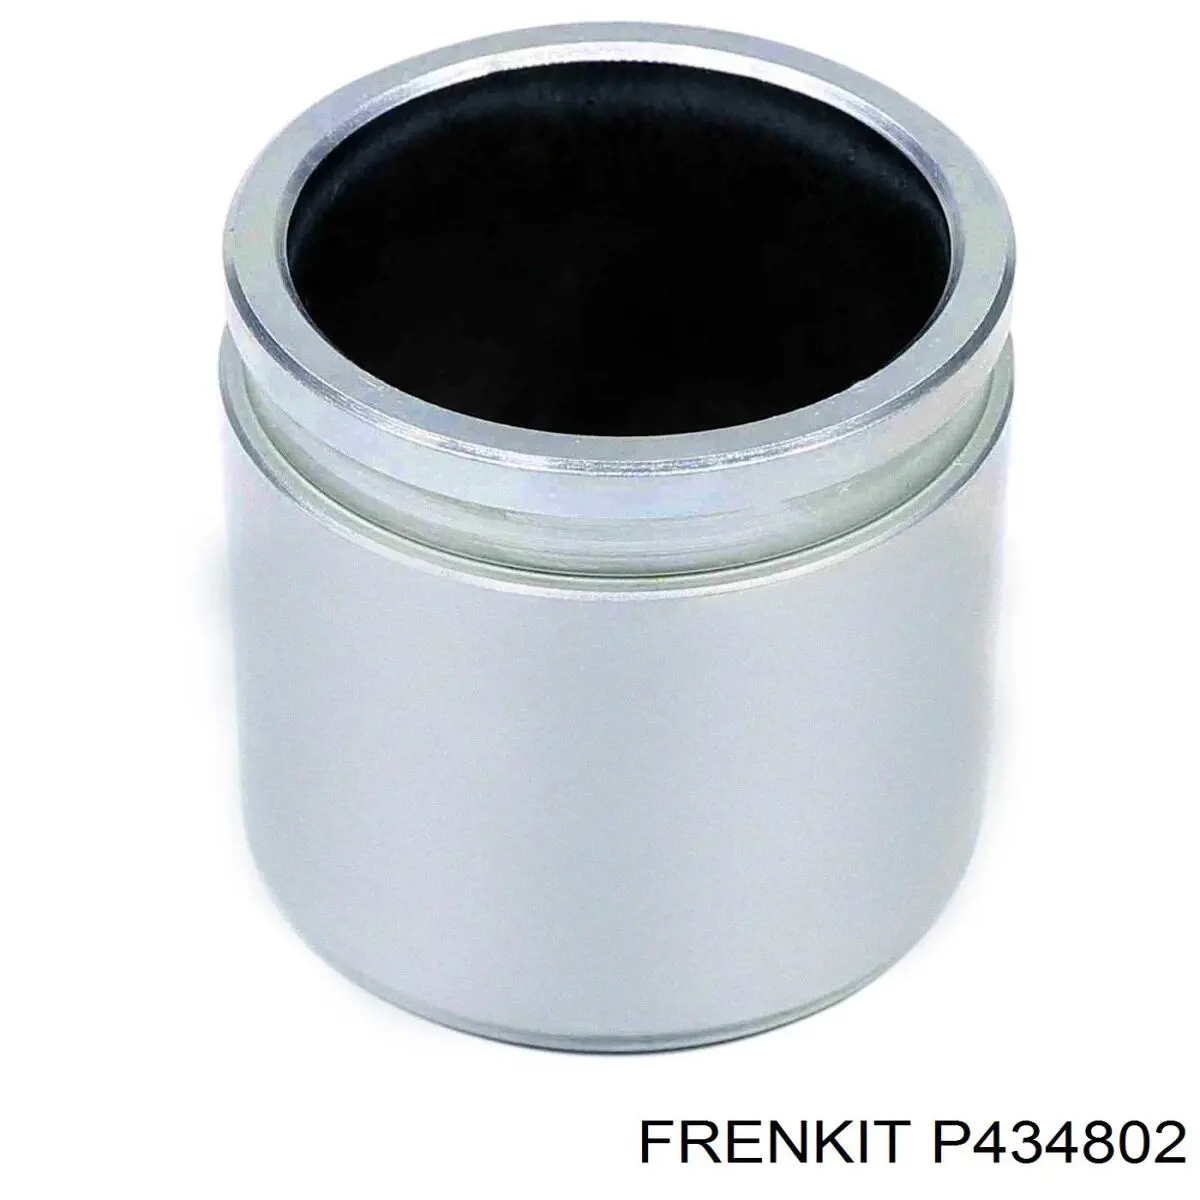 P434802 Frenkit поршень суппорта тормозного переднего